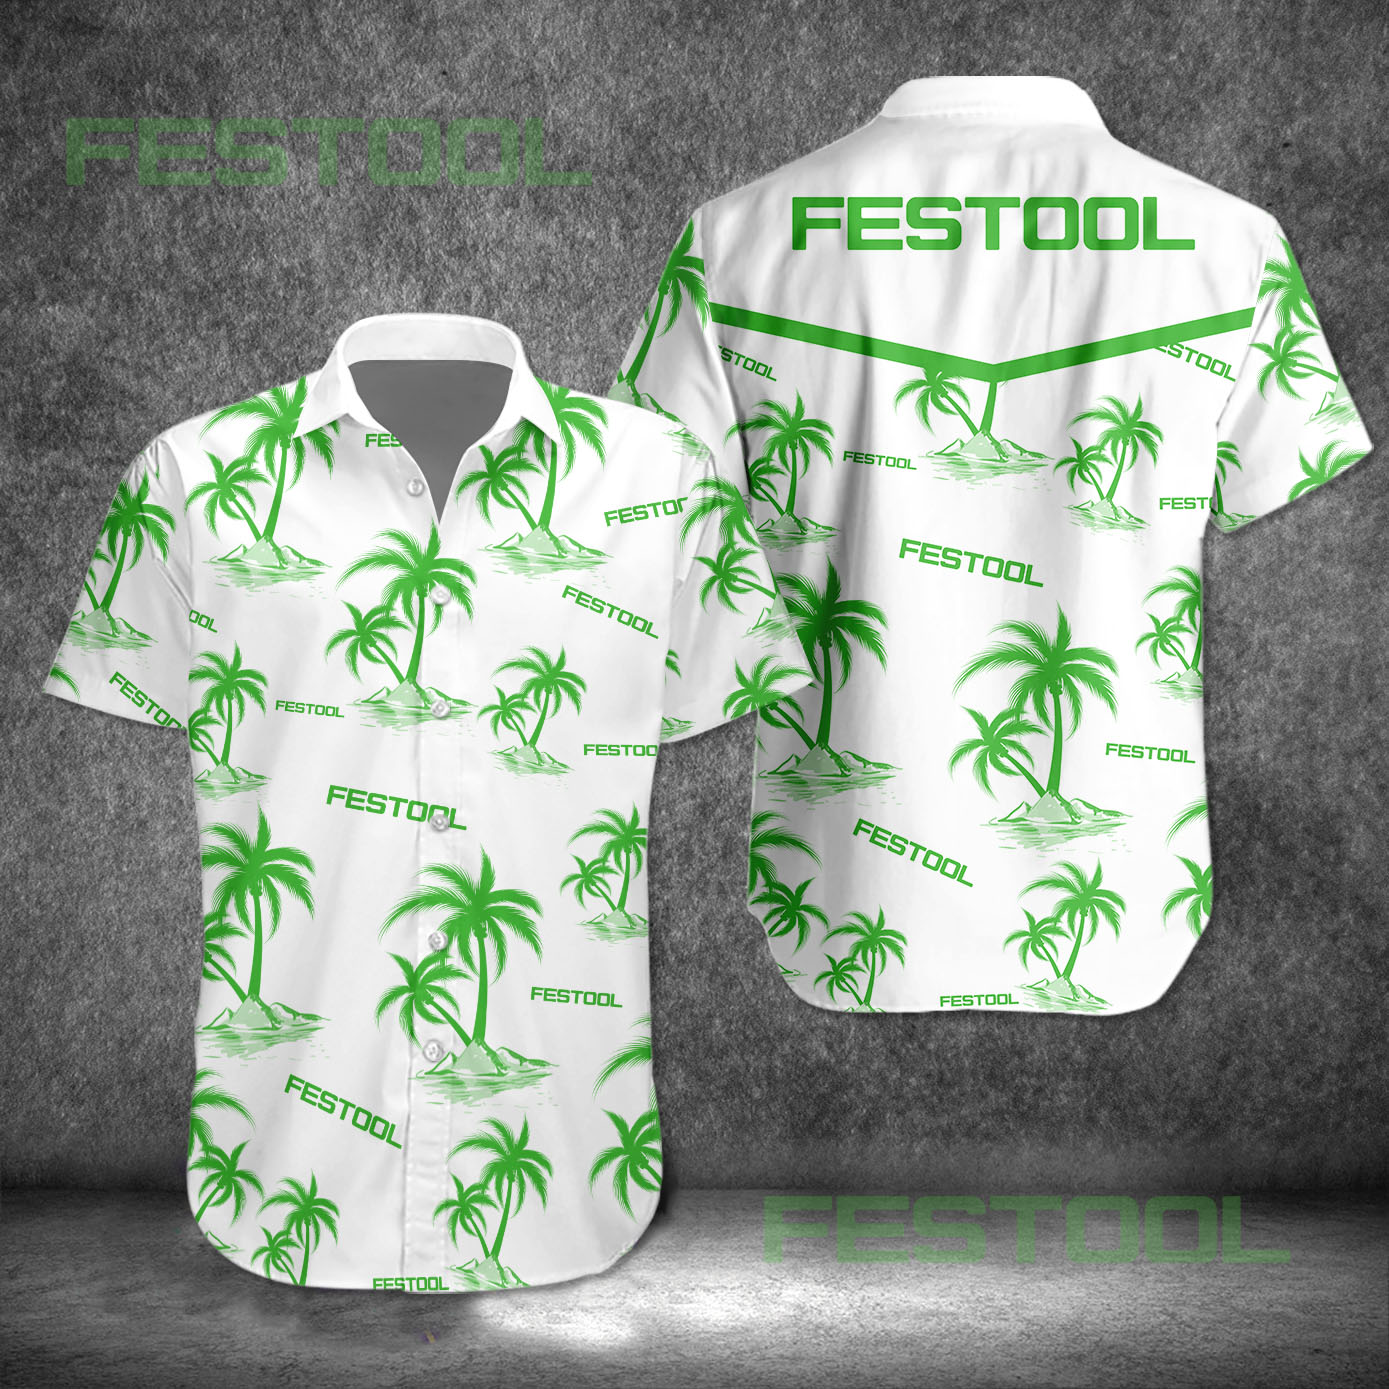 festool hawaiian shirt 3414 xRLKL